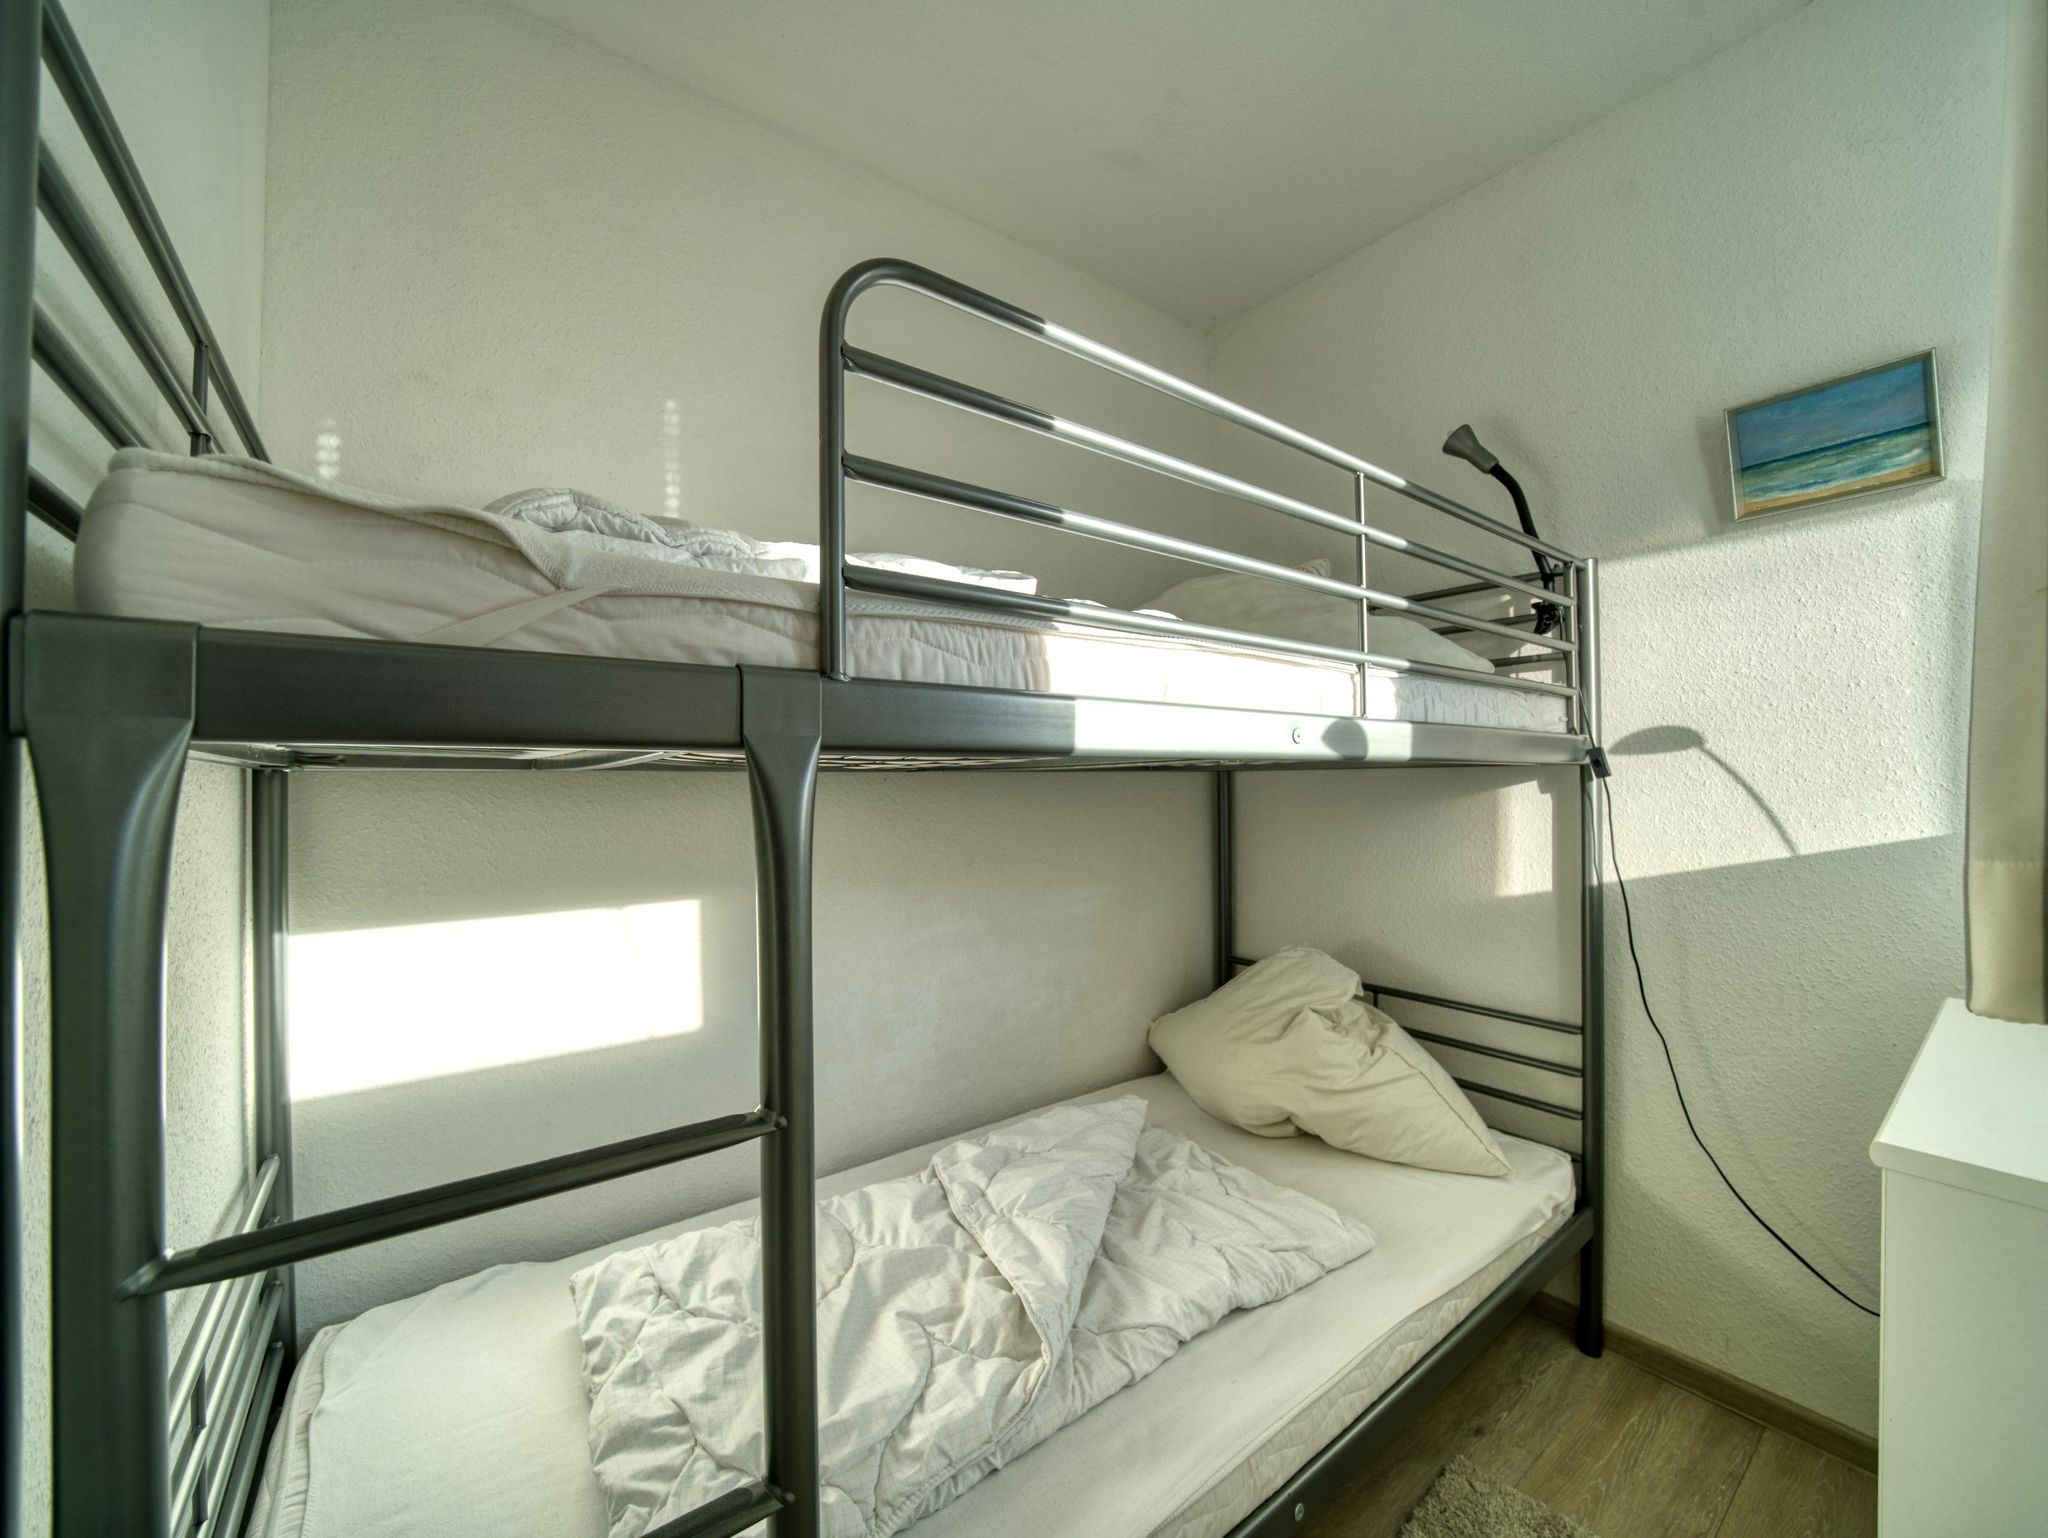 Schlafbereich mit Doppelbett